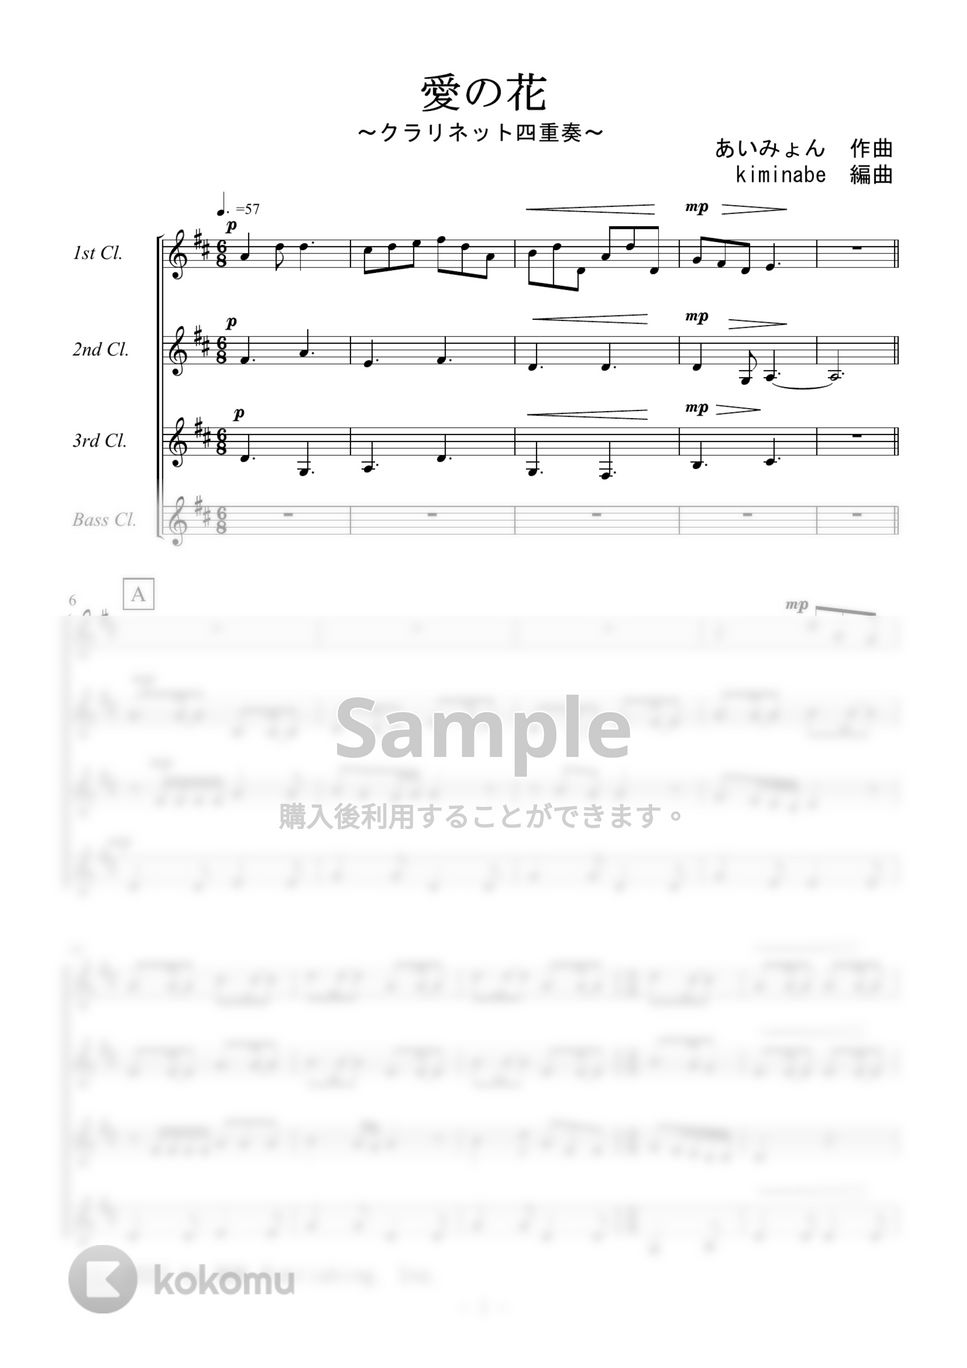 あいみょん - 愛の花 (クラリネット四重奏) by kiminabe